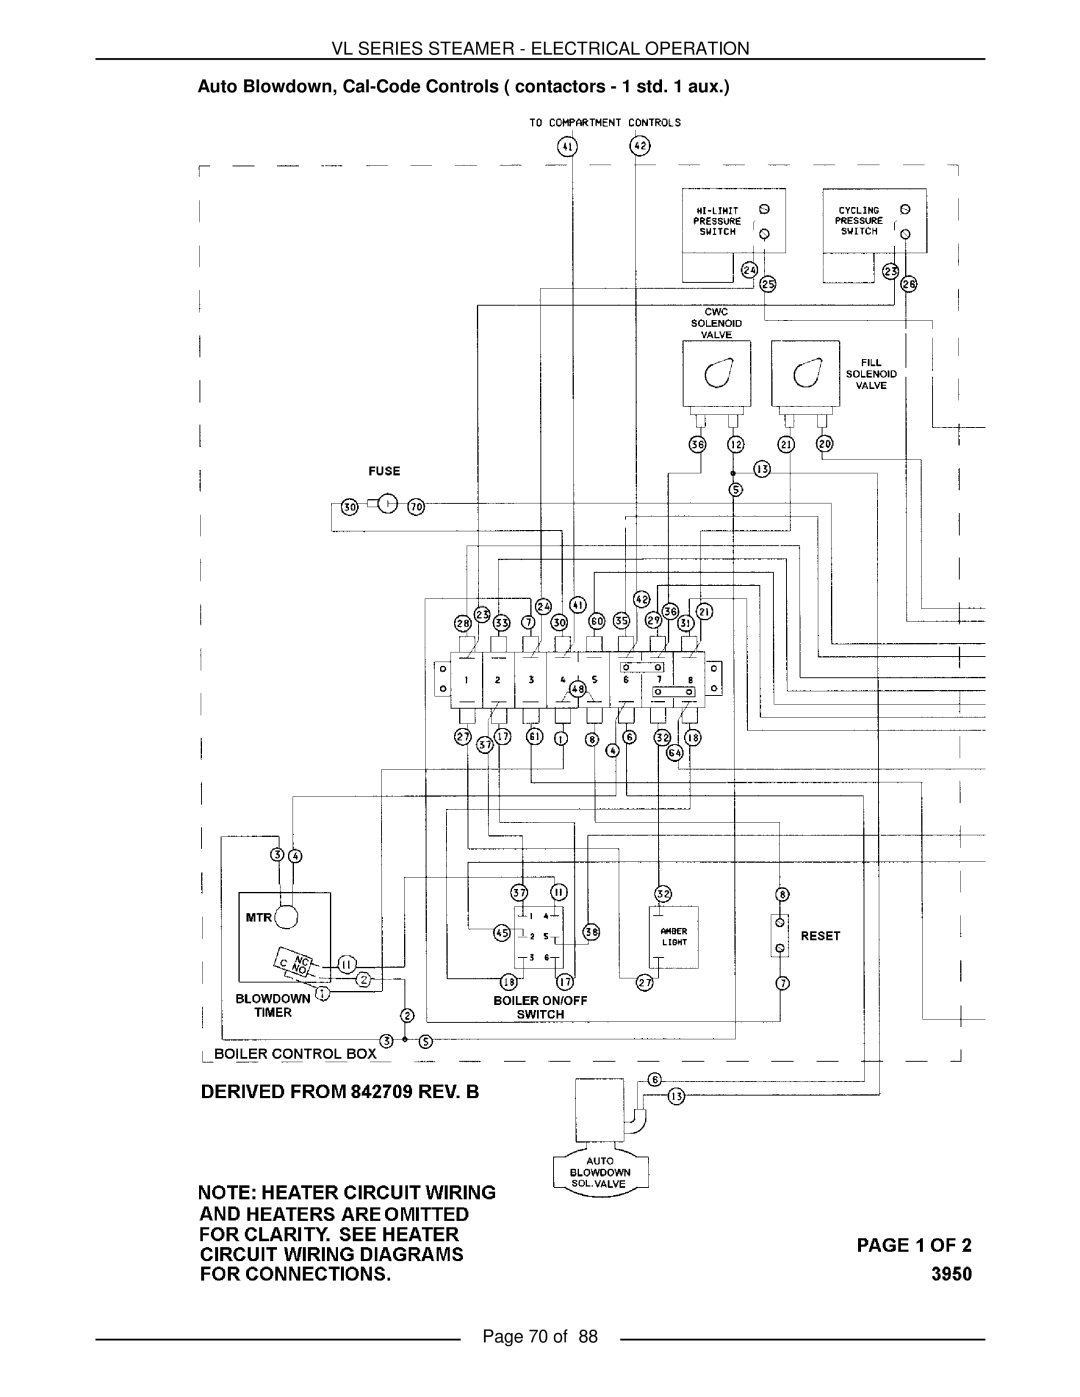 Vulcan-Hart VL3GPS, VL3GMS, VL2GMS, VL3GAS, VL2GAS, VL2GSS, VL3GSS, VL2GPS Vl Series Steamer - Electrical Operation, Page 70 of 